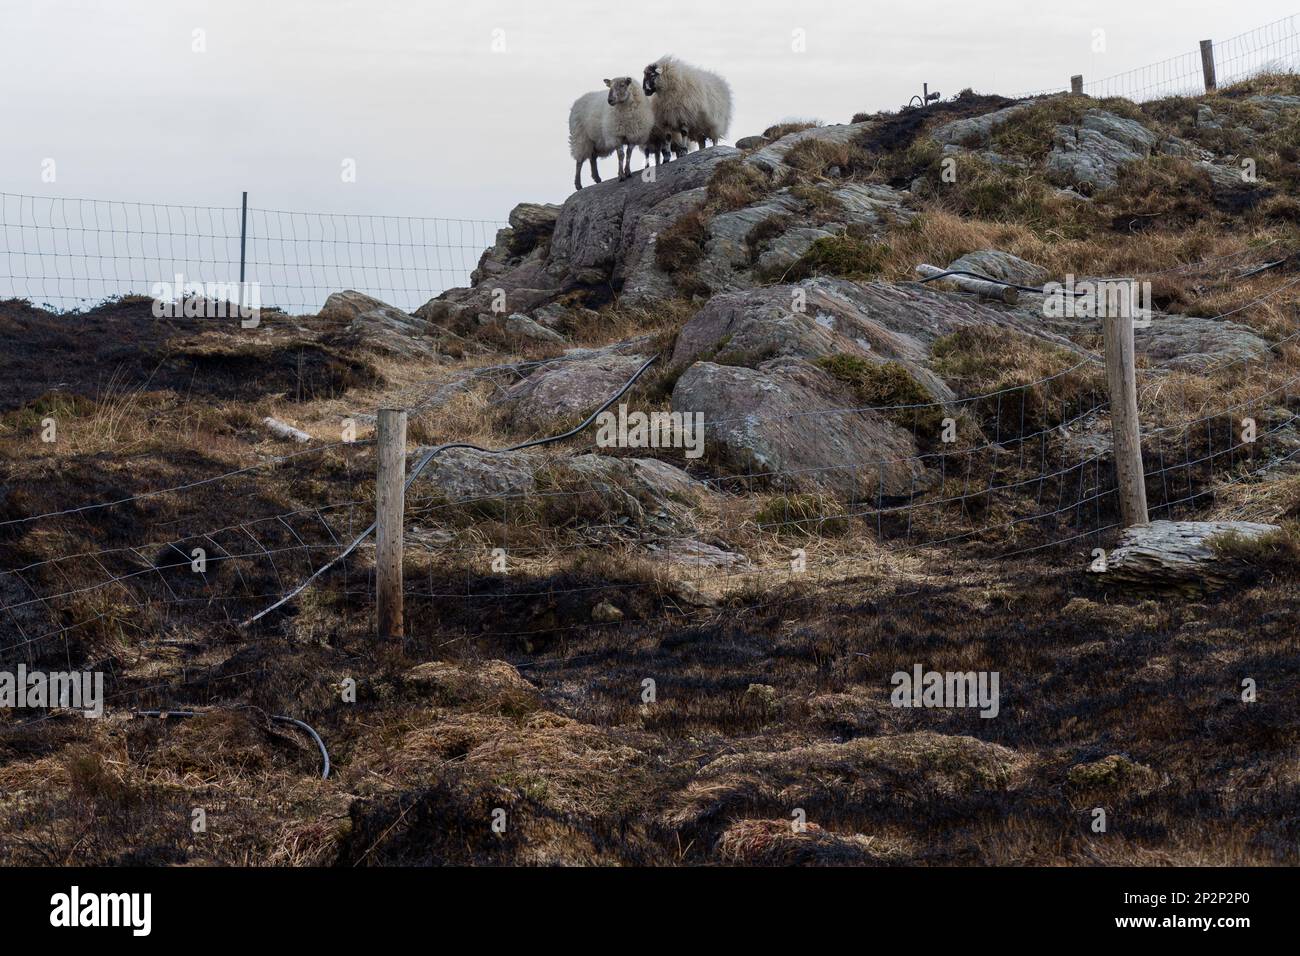 Schafe, umgeben von verbrannter Erde auf dem Berg Gabriel nach brennender Vegetation. Stockfoto